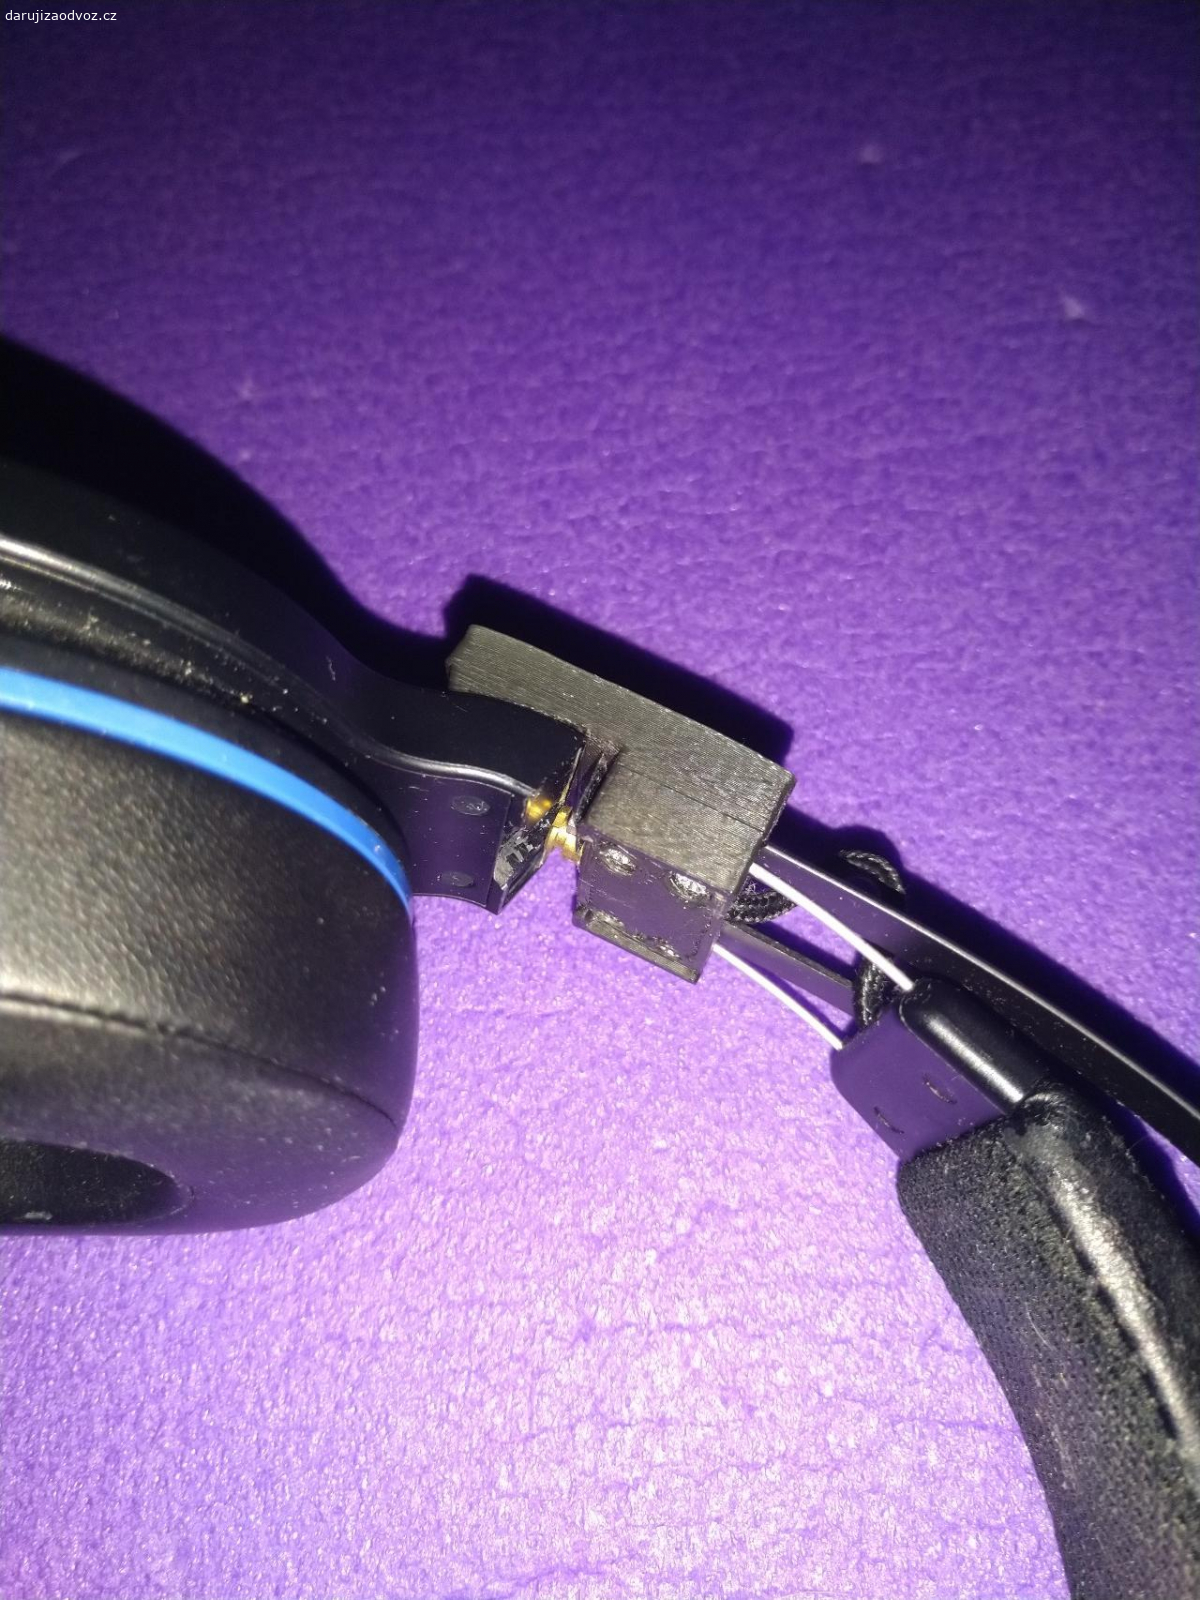 Bezdrátová sluchátka nedržící. Daruji bezdrátová sluchátka pro PS4, kompatibilní s PC. Fungují, hrají dobře, ale nedrží na uších, protože se rozlomil plastový díl. Ten jsem sice vyměnil, ale po chvíli používání se ulomil další kus plastu.